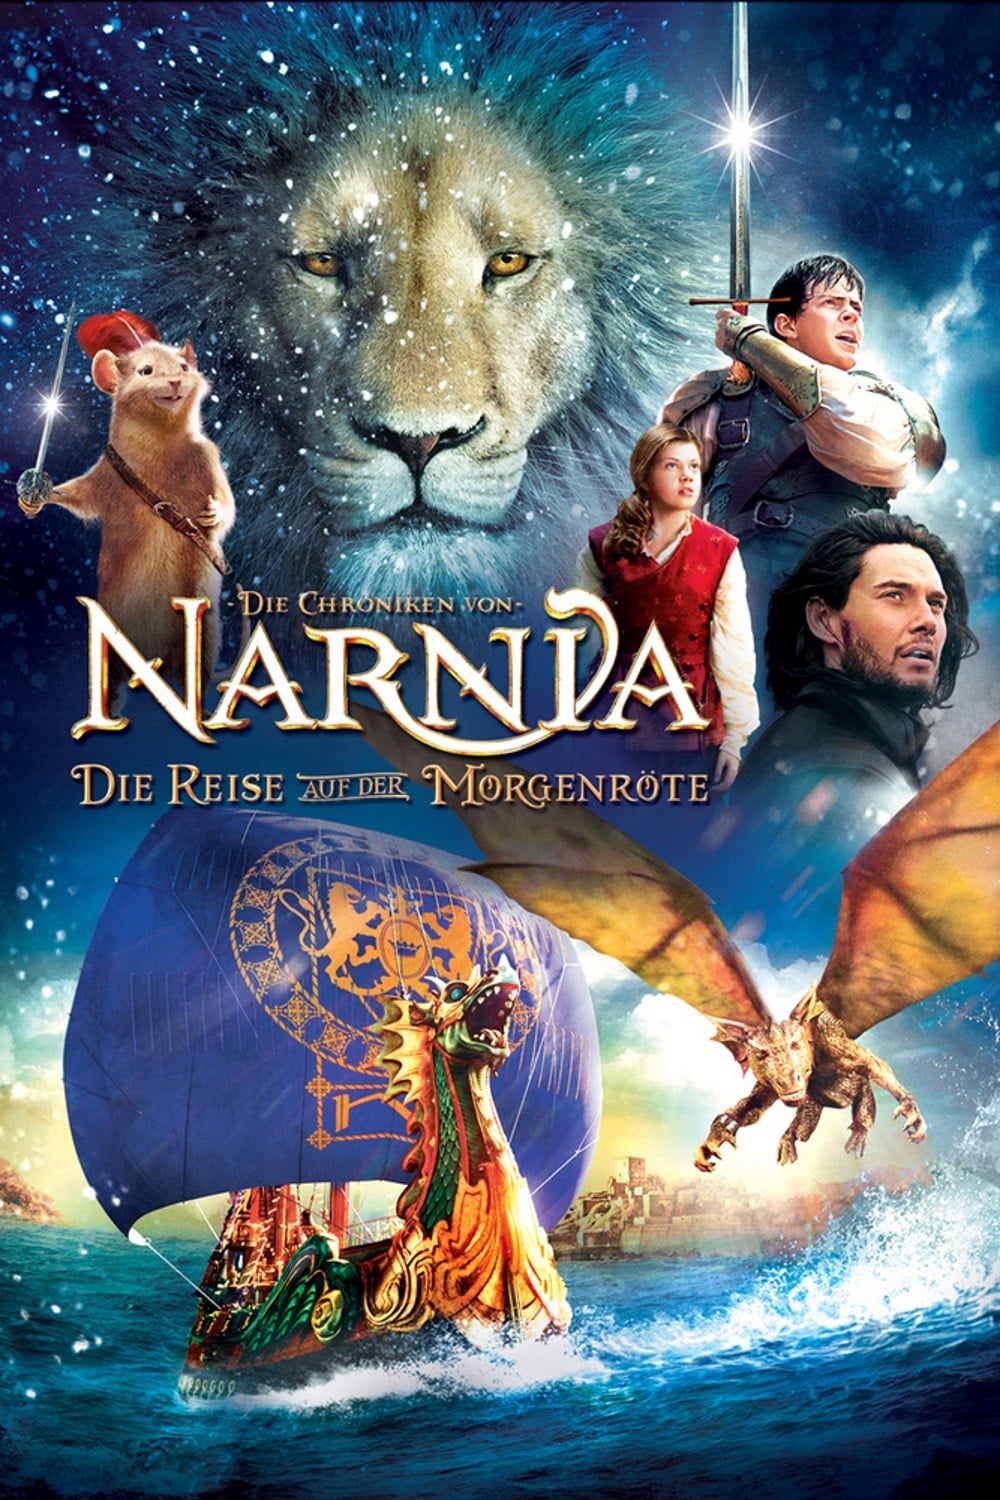 Plakat von "Die Chroniken von Narnia: Die Reise auf der Morgenröte"